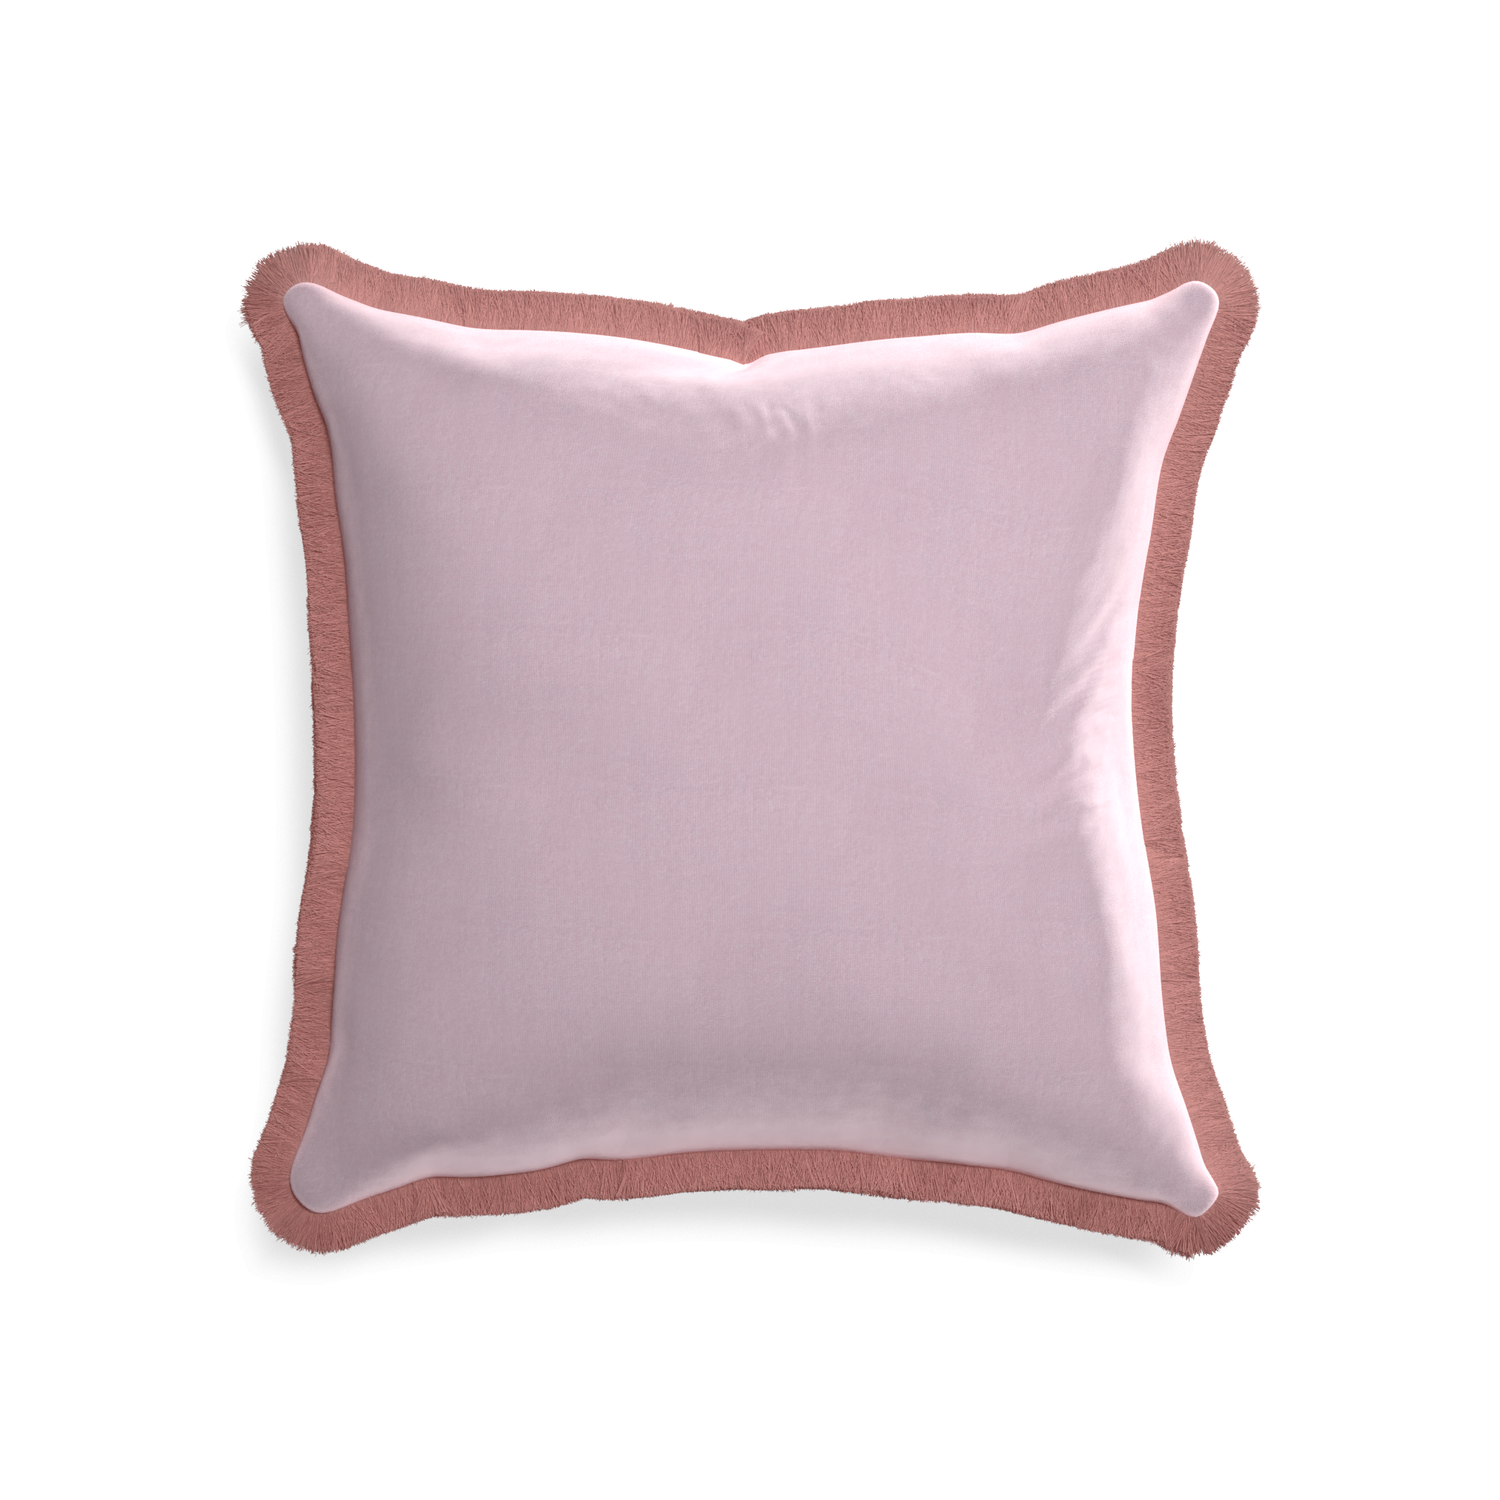 20-square lilac velvet custom pillow with d fringe on white background